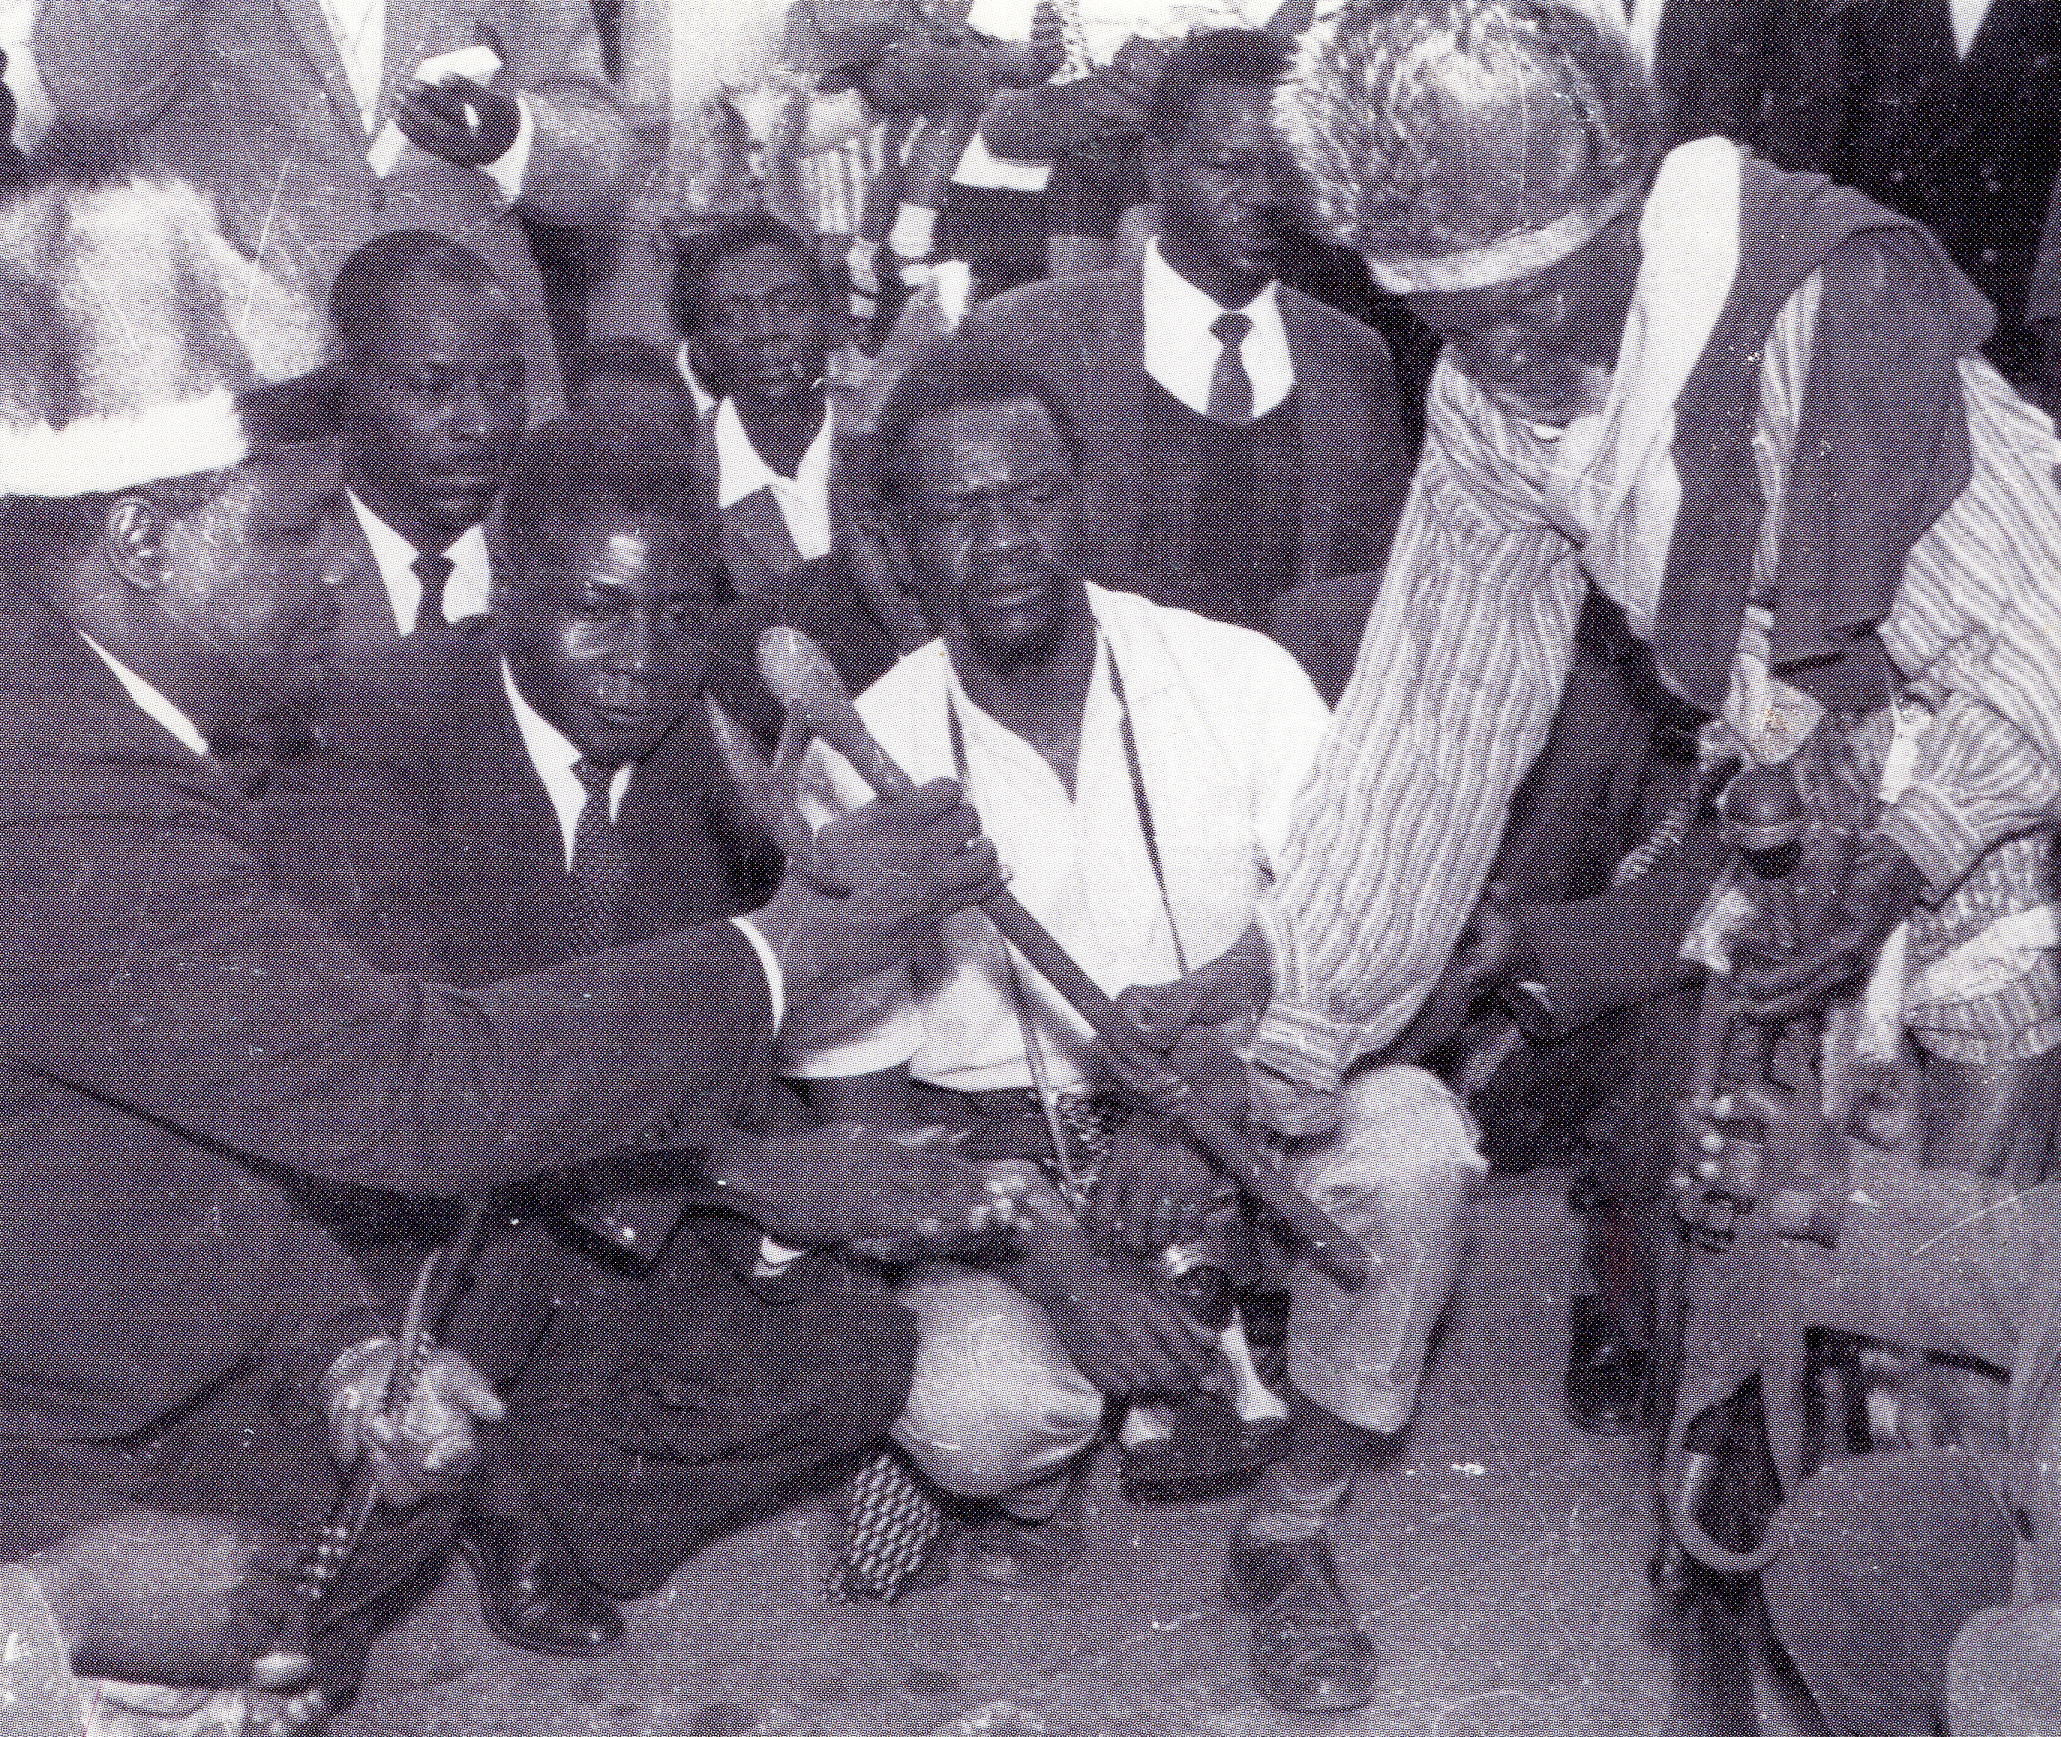 Mugabe and Nkomo, 1962